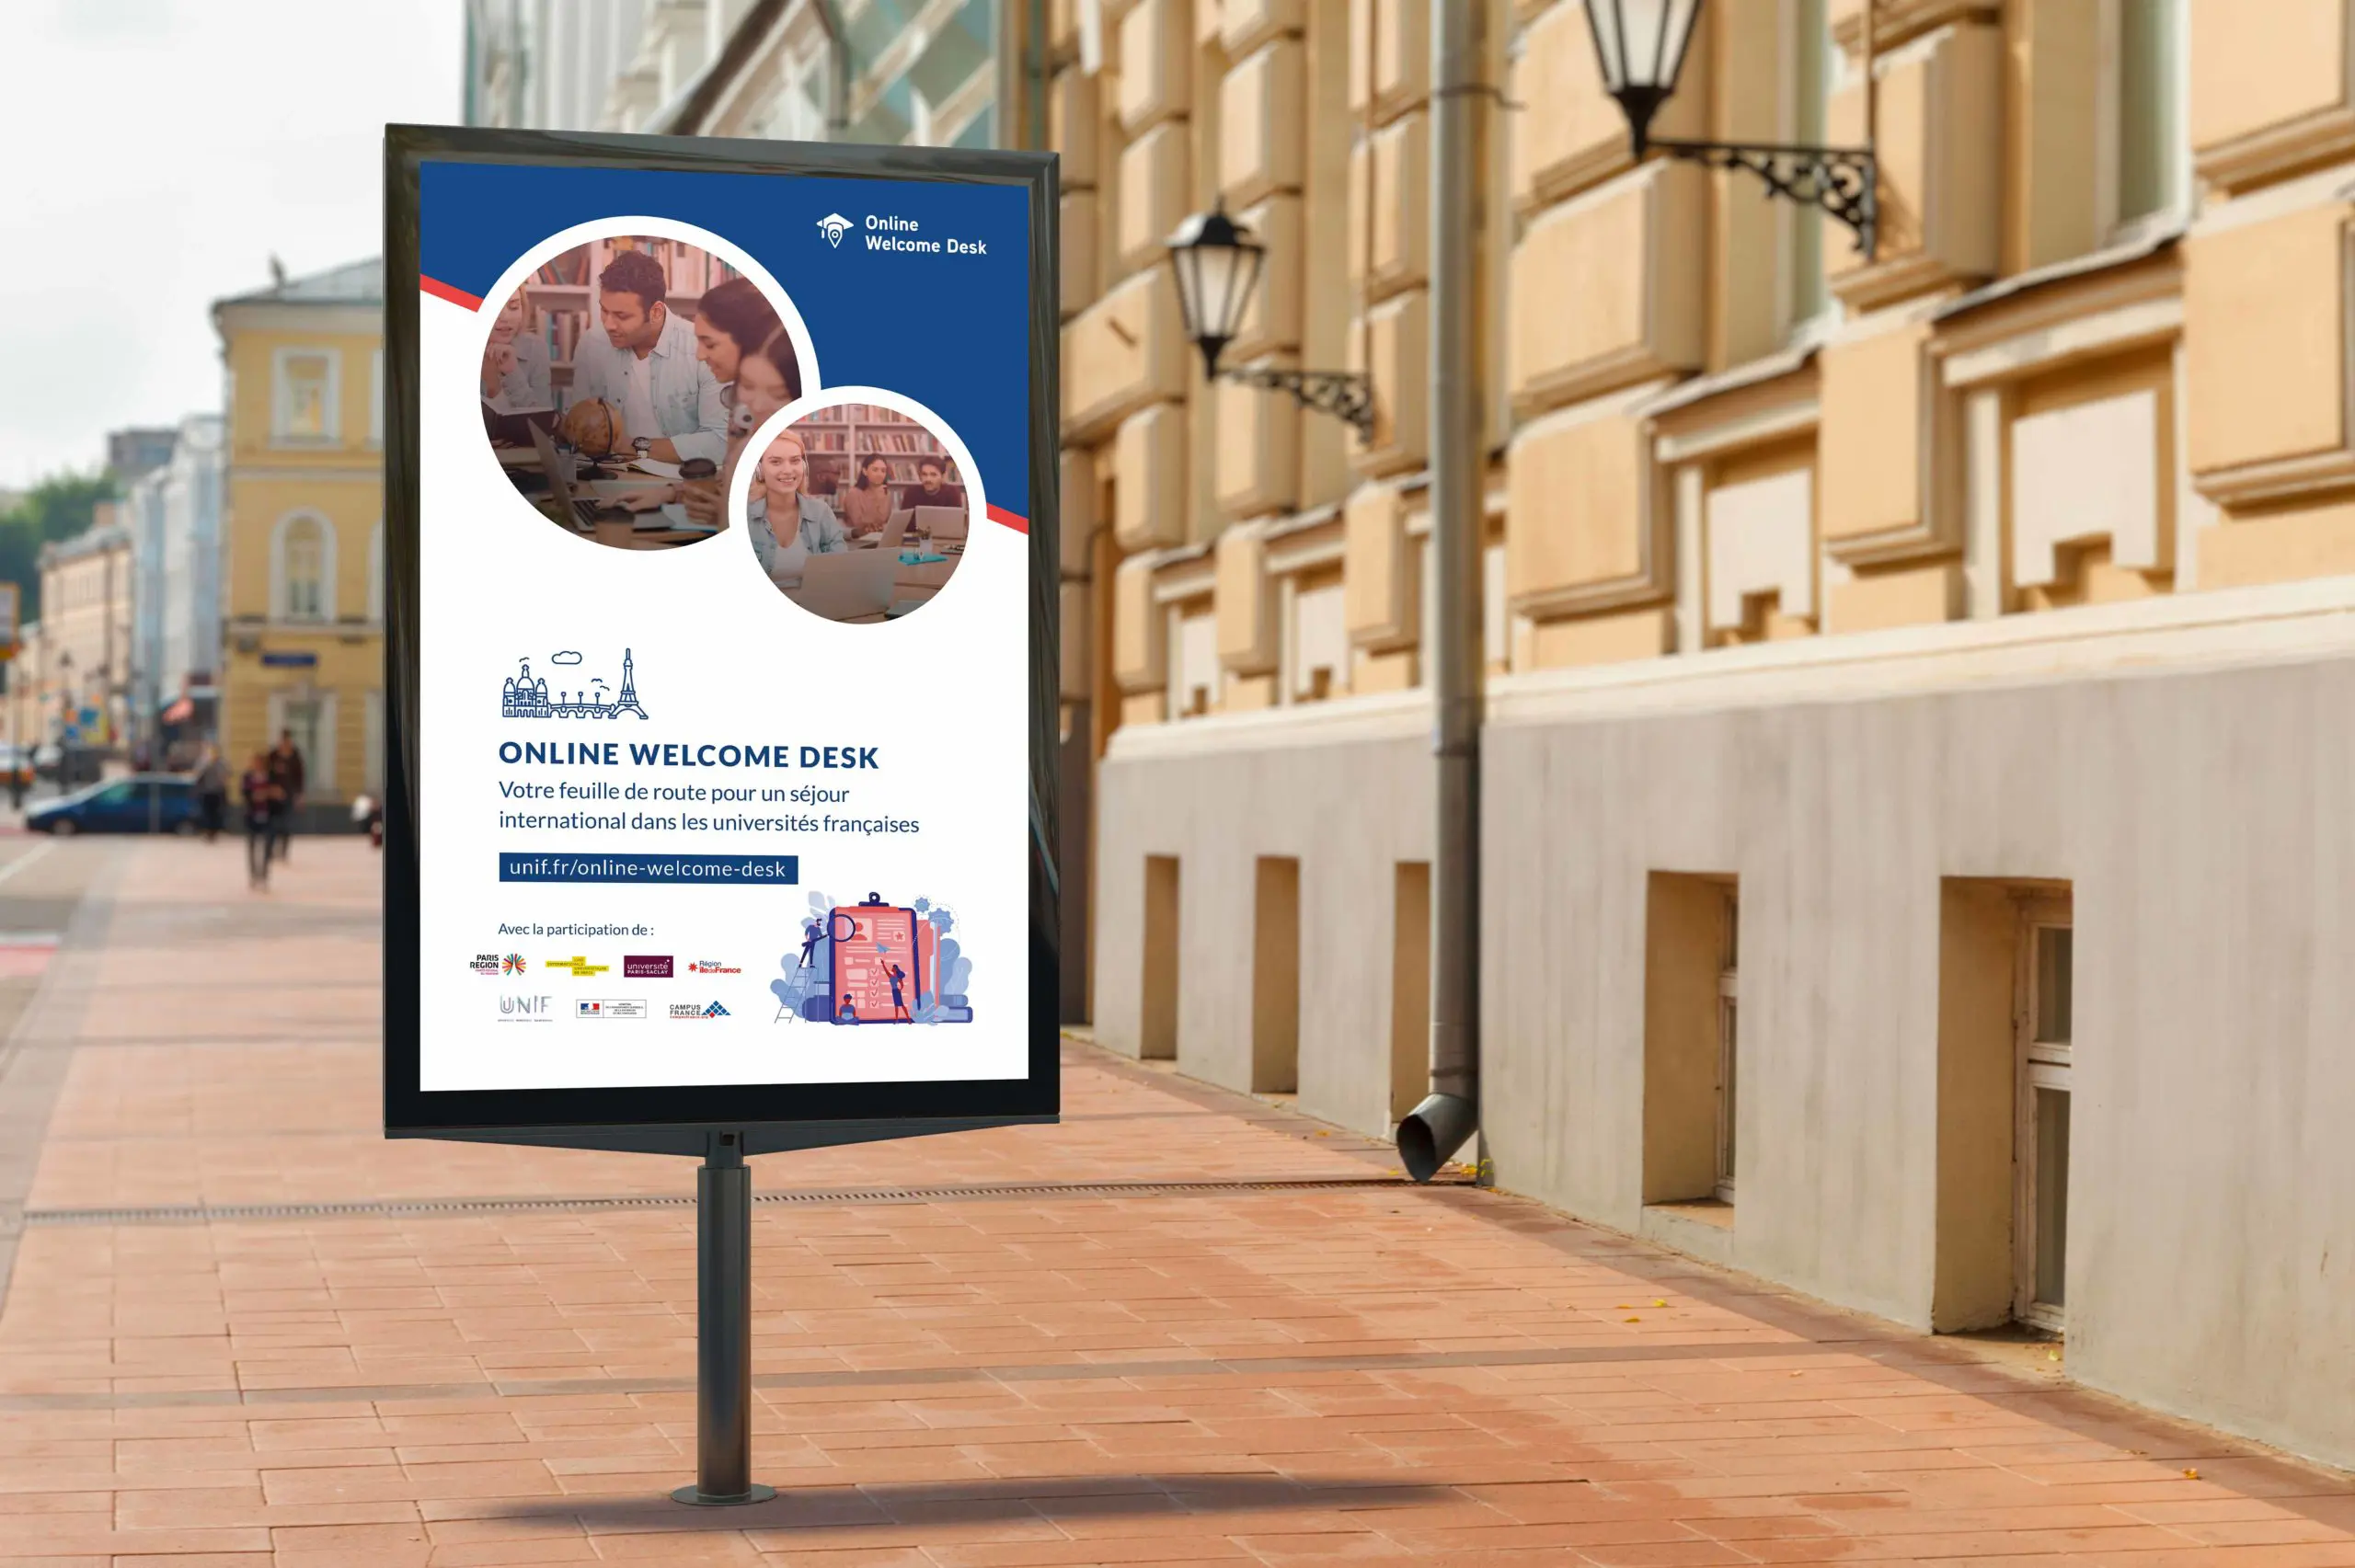 Panneau publicitaire avec une affiche de communication pour mettre en avant la plateforme Online Welcome Desk. Affiche avec des photos rondes et un bandeau bleu.